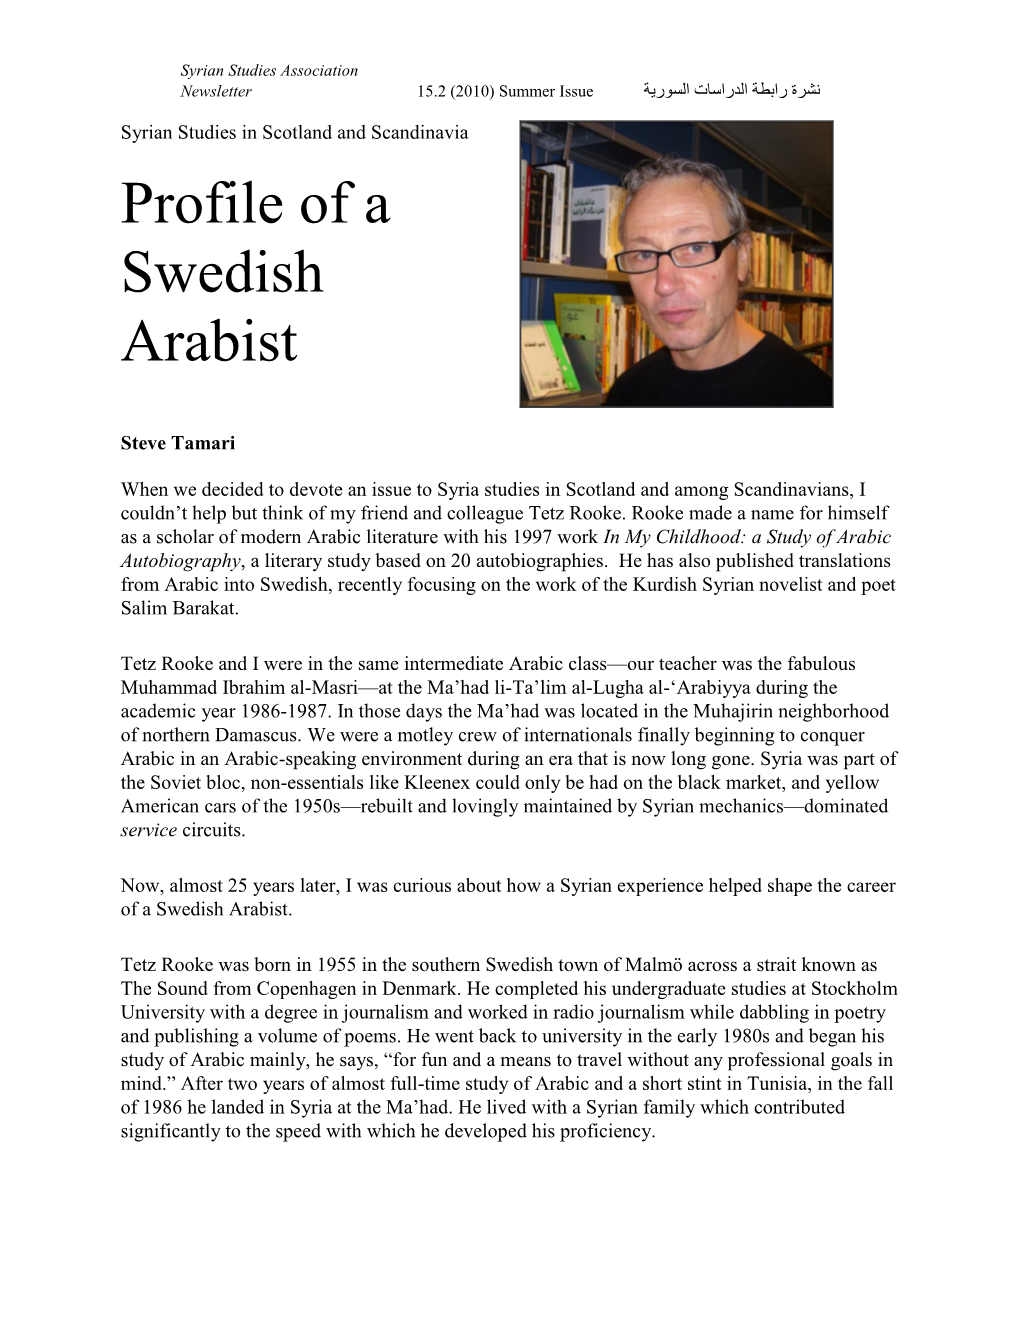 Profile of a Swedish Arabist